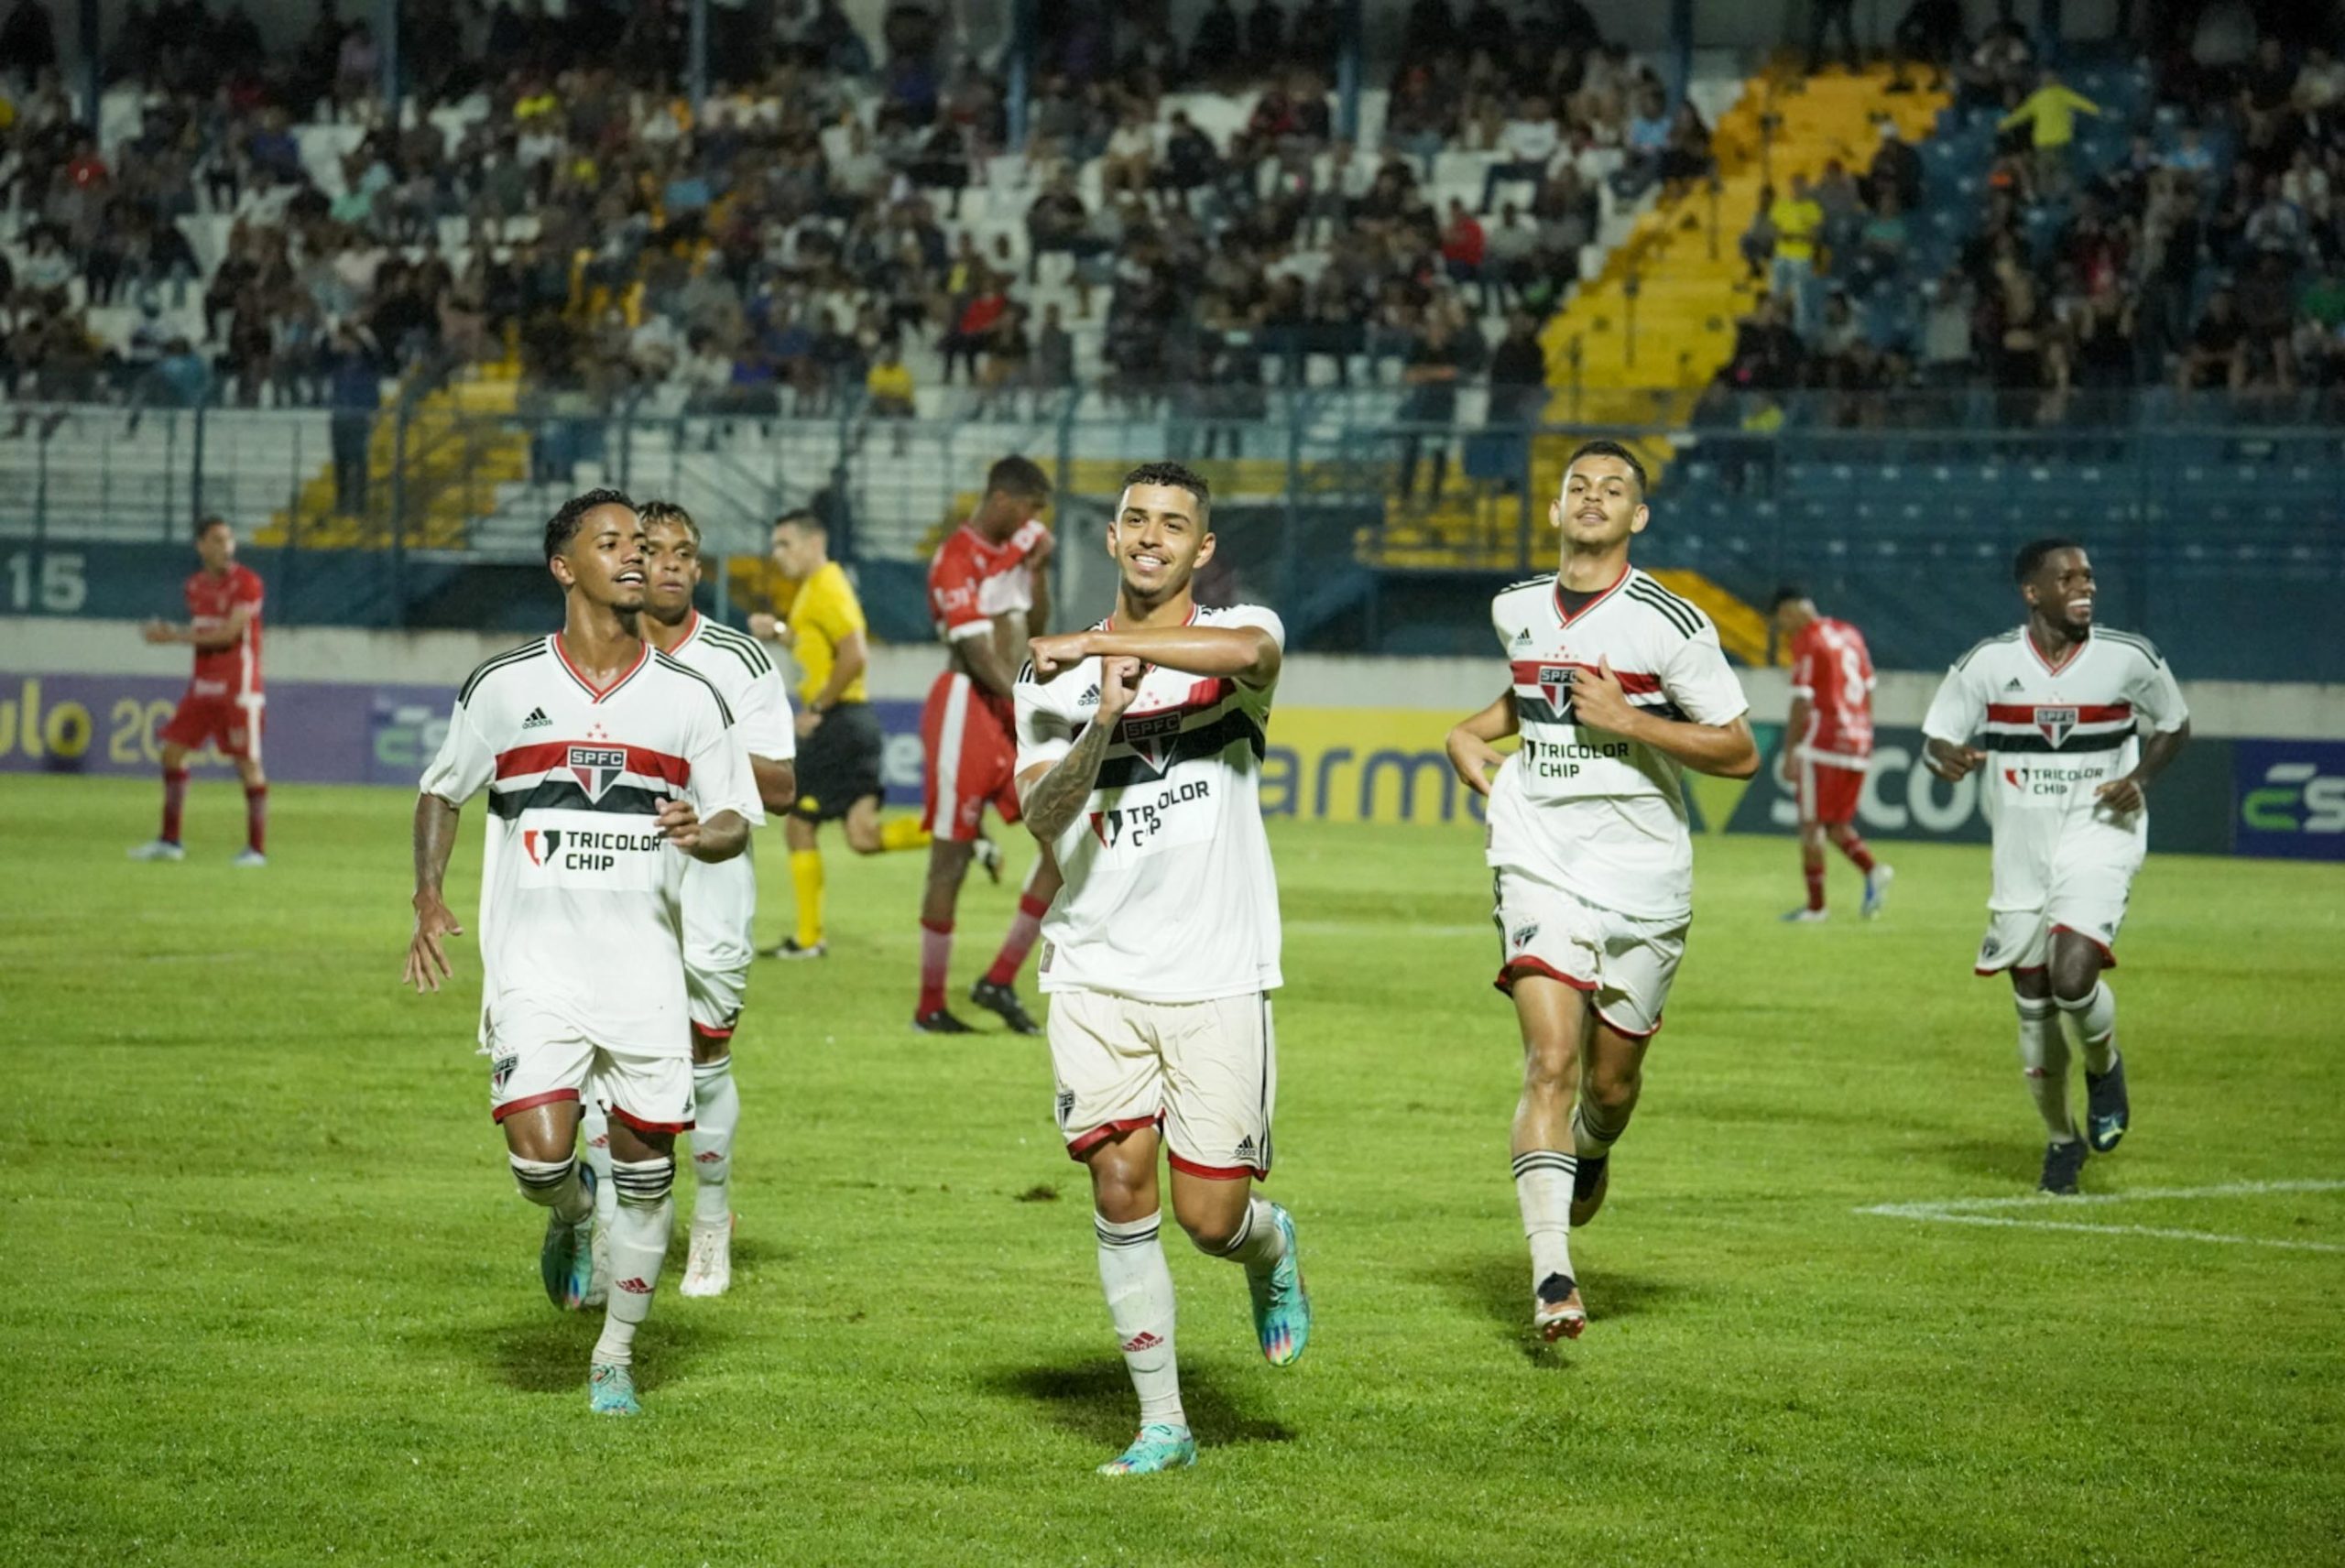 São Paulo estreia na Copinha com vitória sobre o Porto Velho